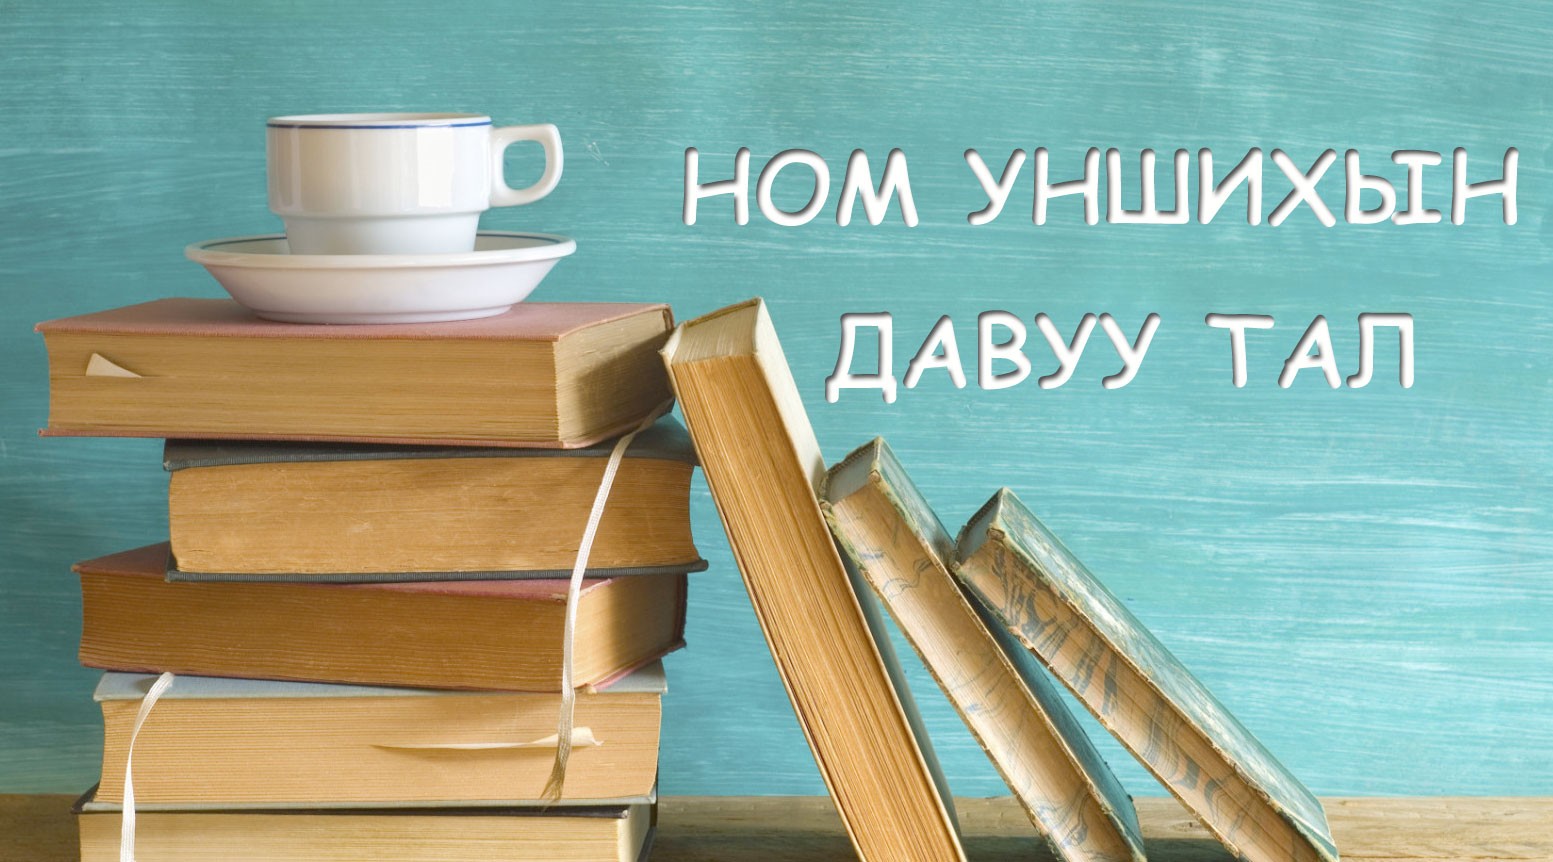 Ном уншдаг хүмүүс бусдаас жаргалтай амьдардгийг та мэдэхүү?